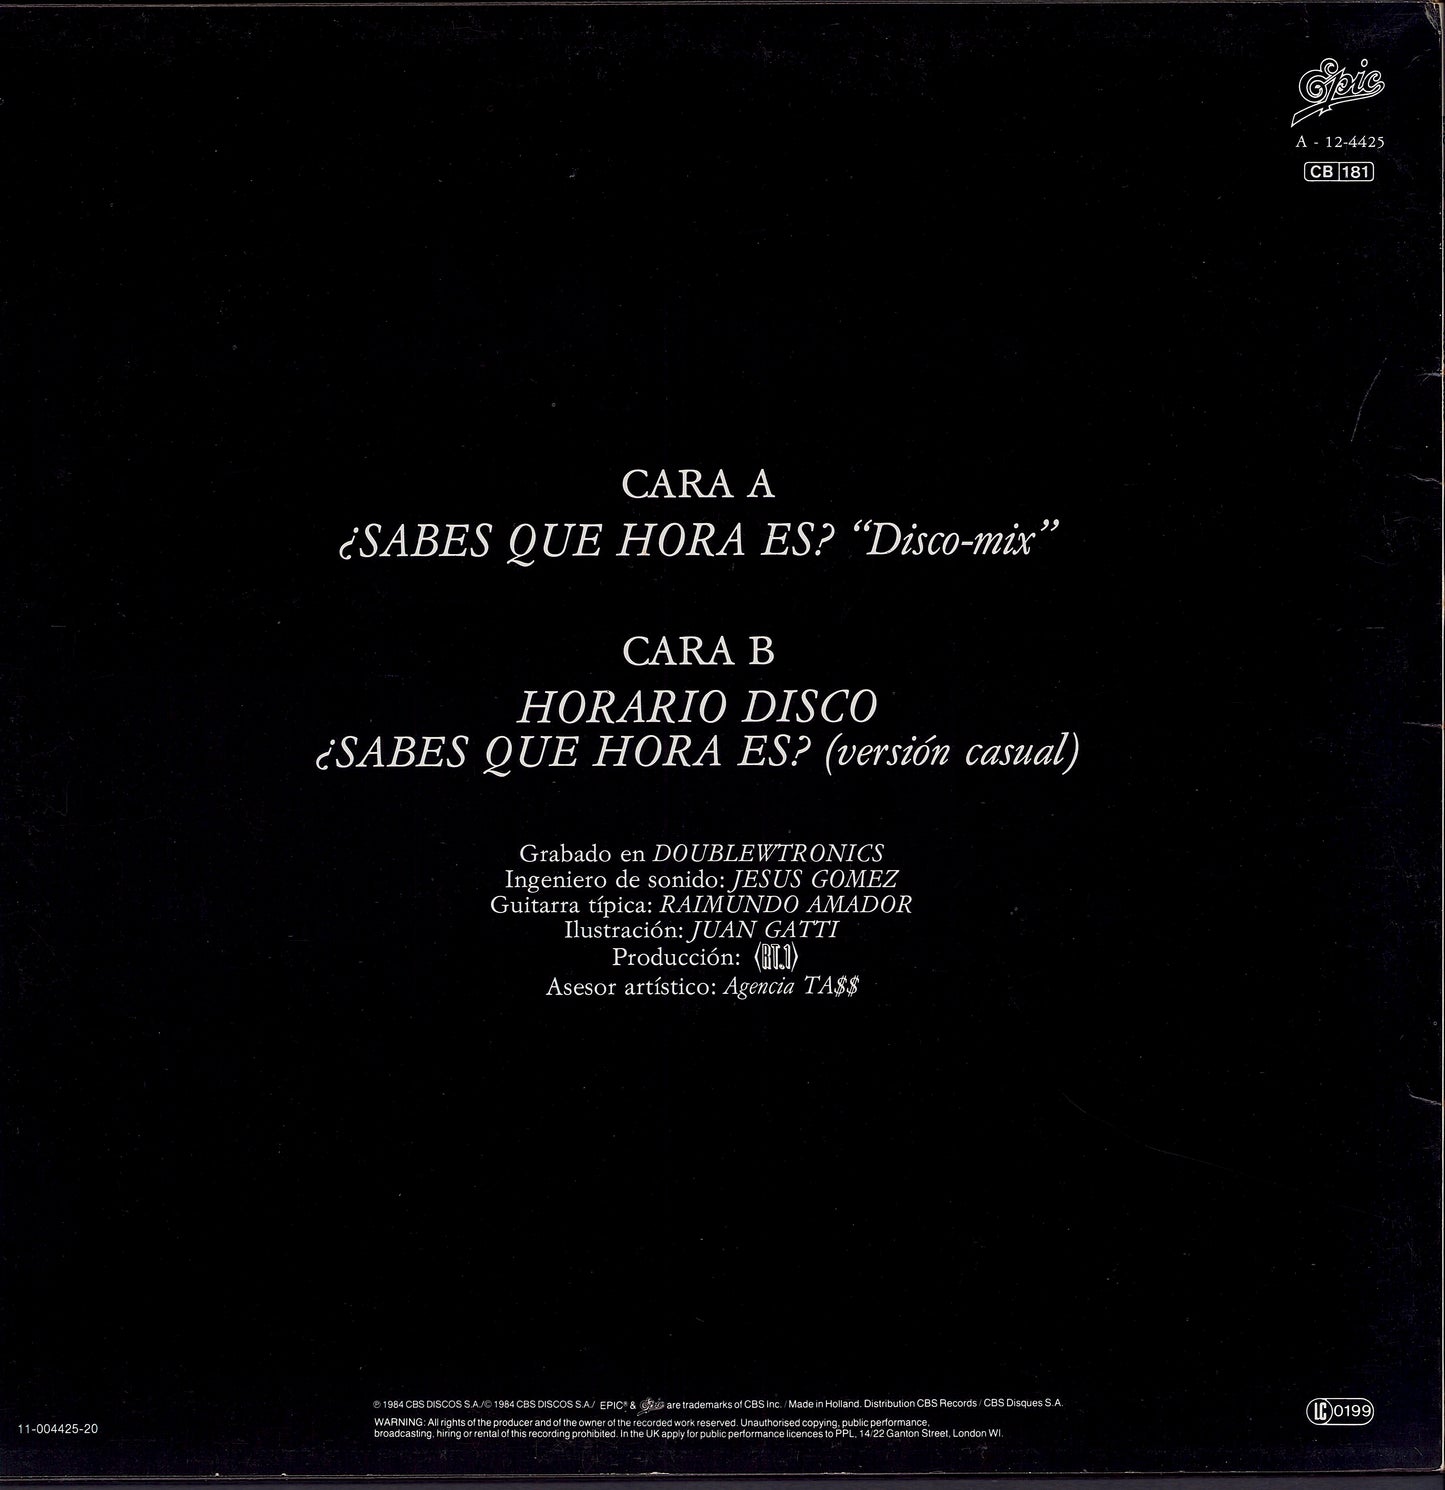 Vicio Latino - ¿Sabes Que Hora Es? (Vinyl 12")